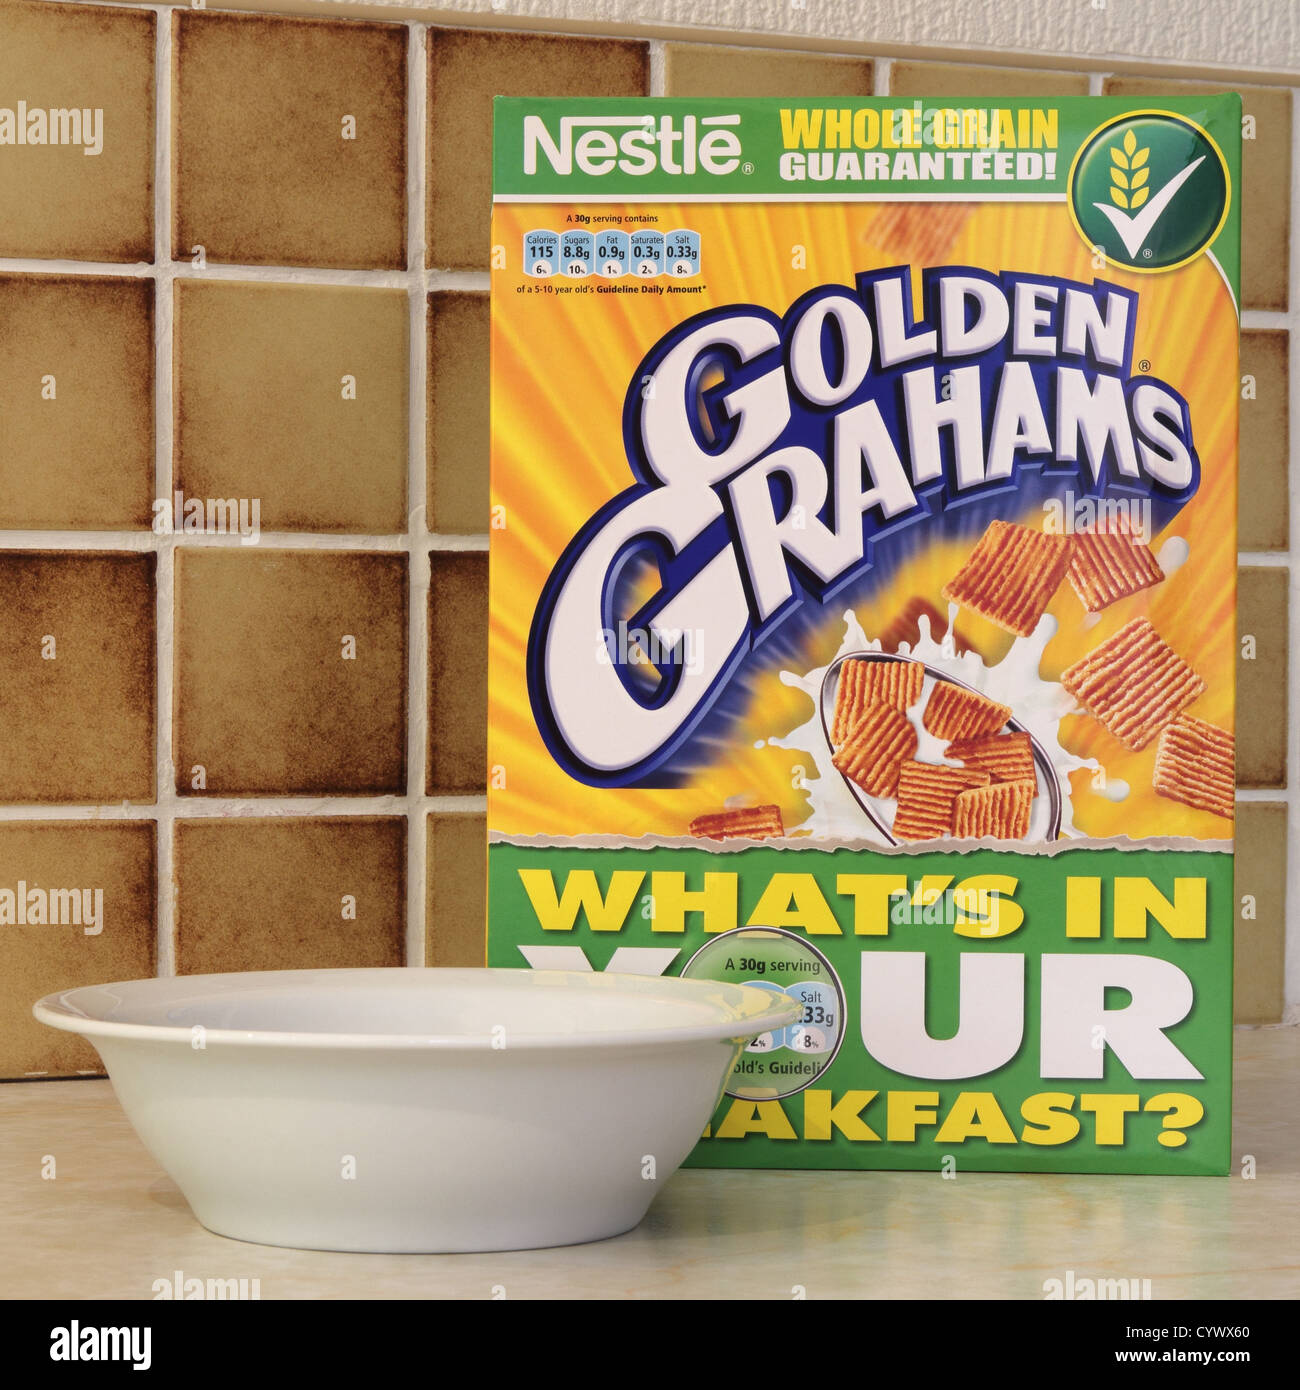 Nestle Cereals Stockfotos und -bilder Kaufen - Seite 2 - Alamy